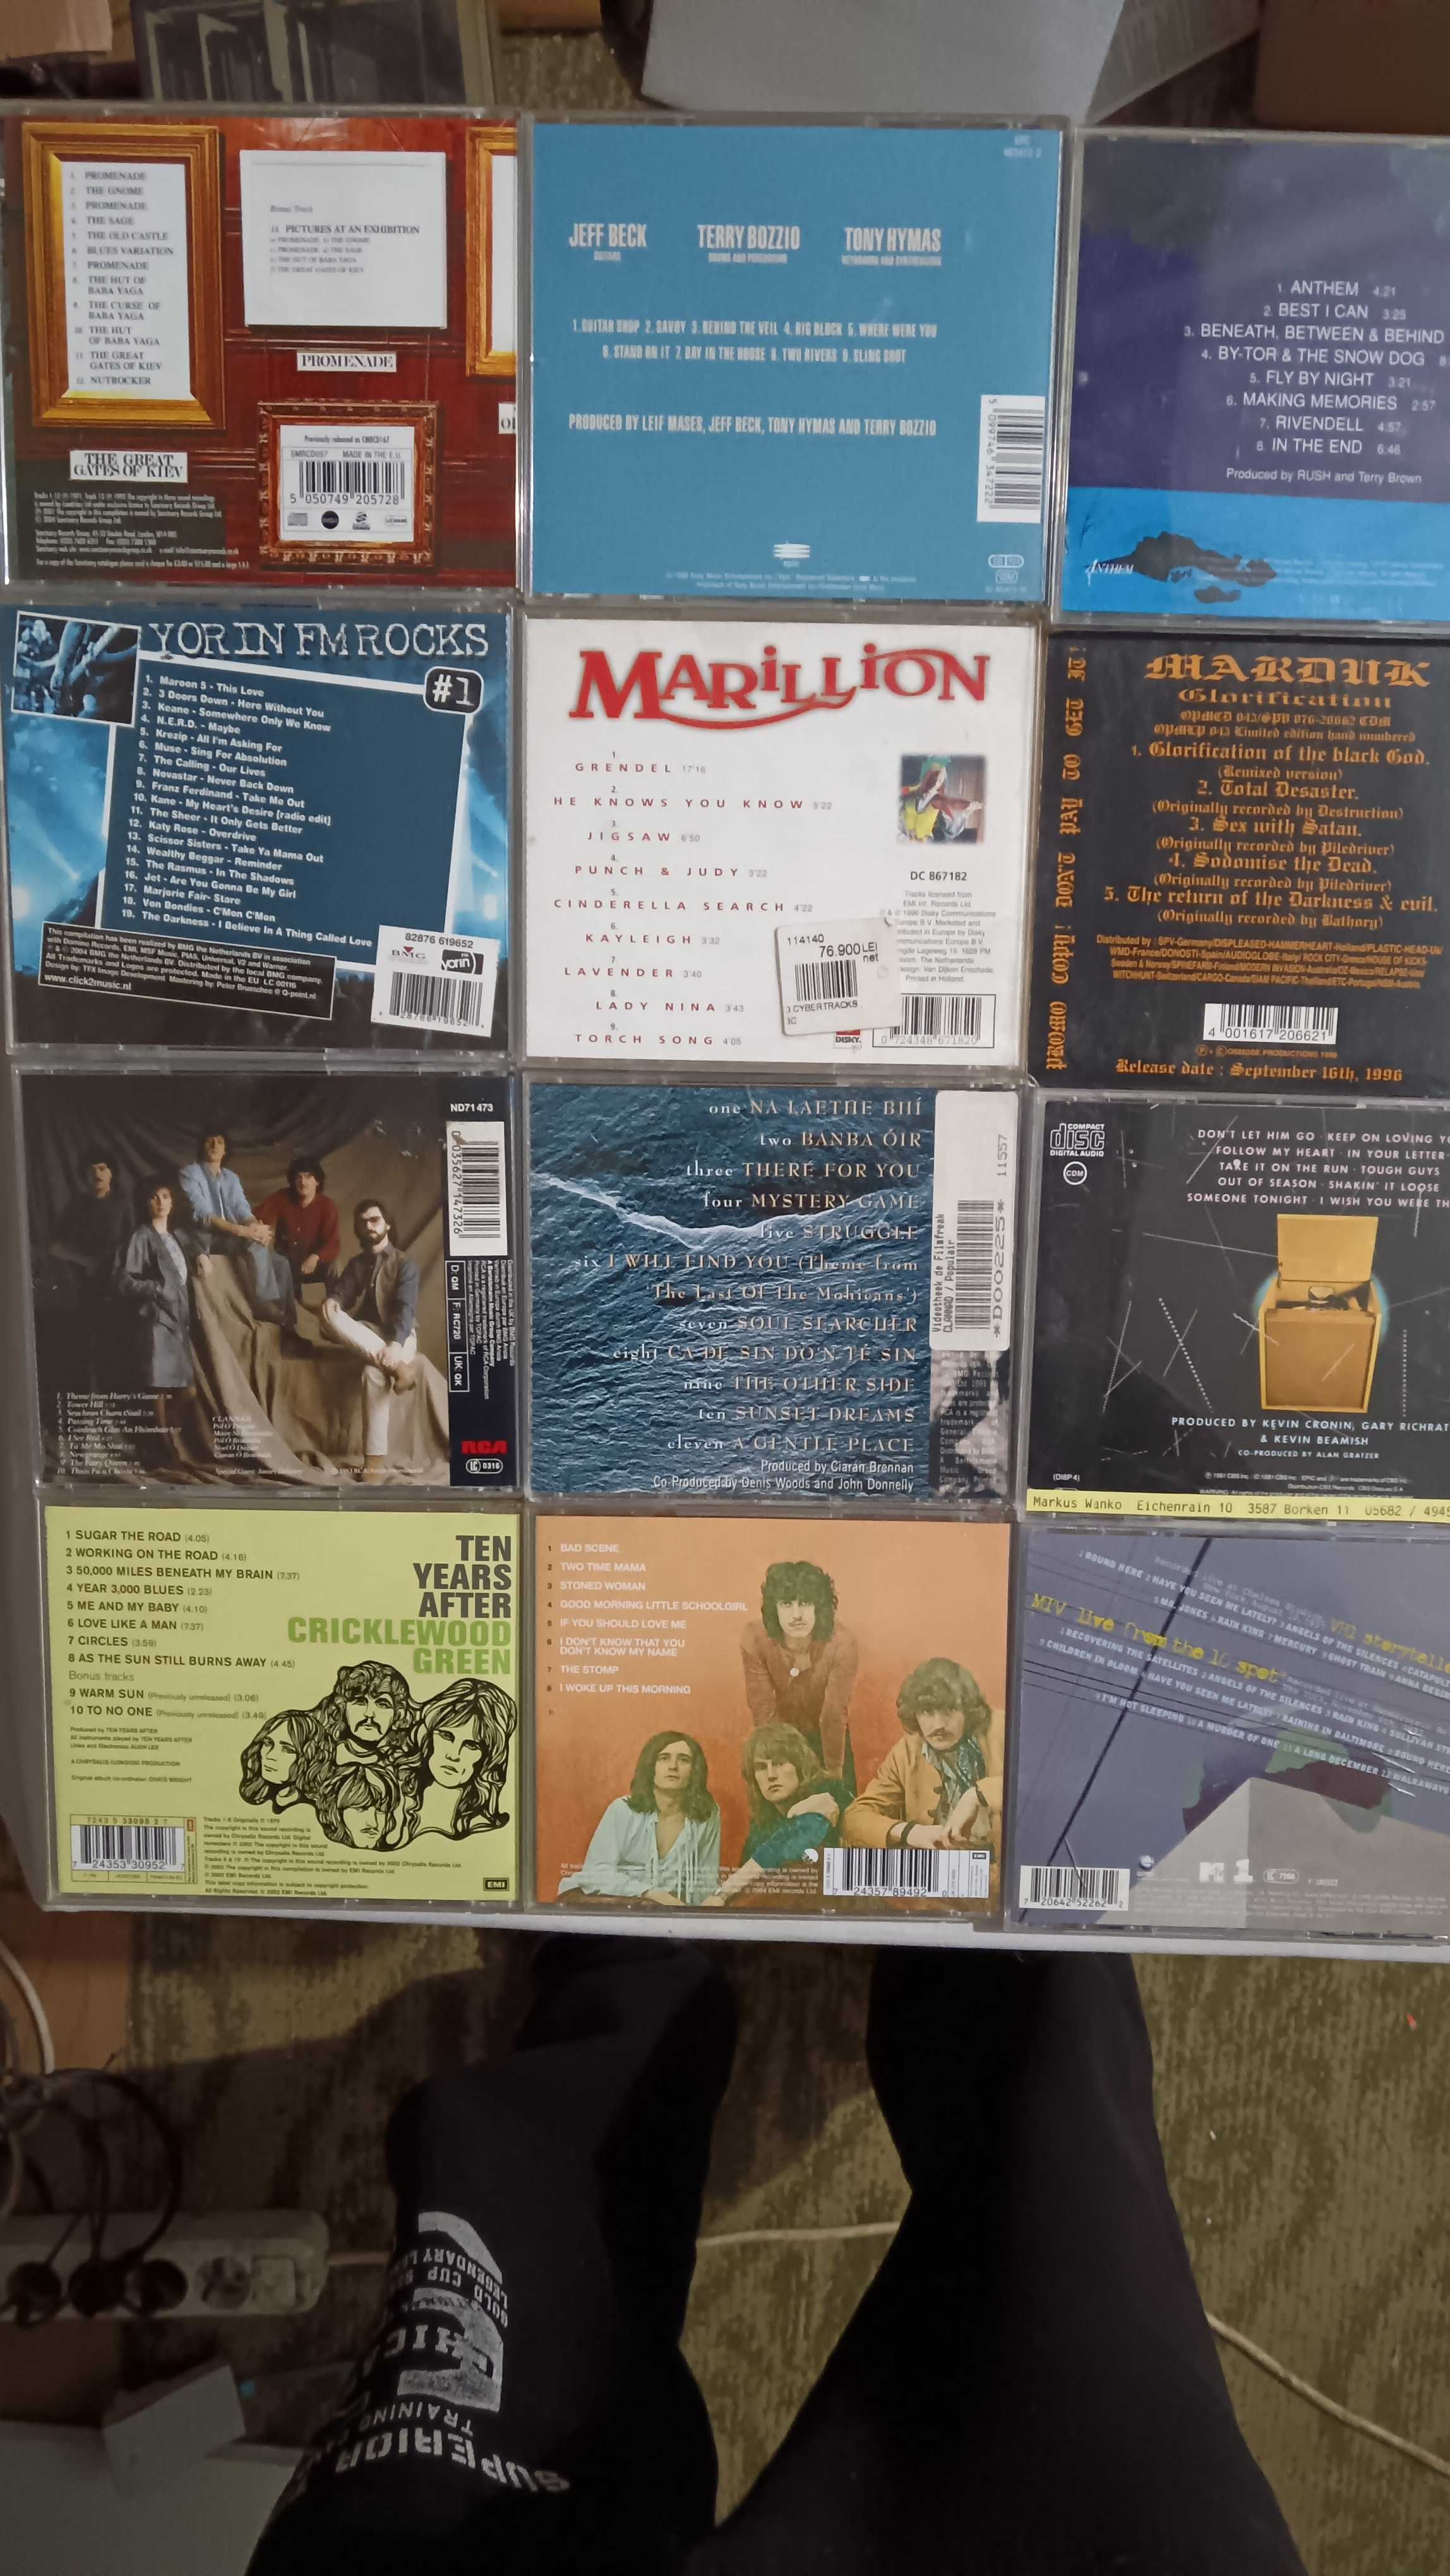 CD uri originale cu muzica diversa, incepand cu 15 lei, vol. 3